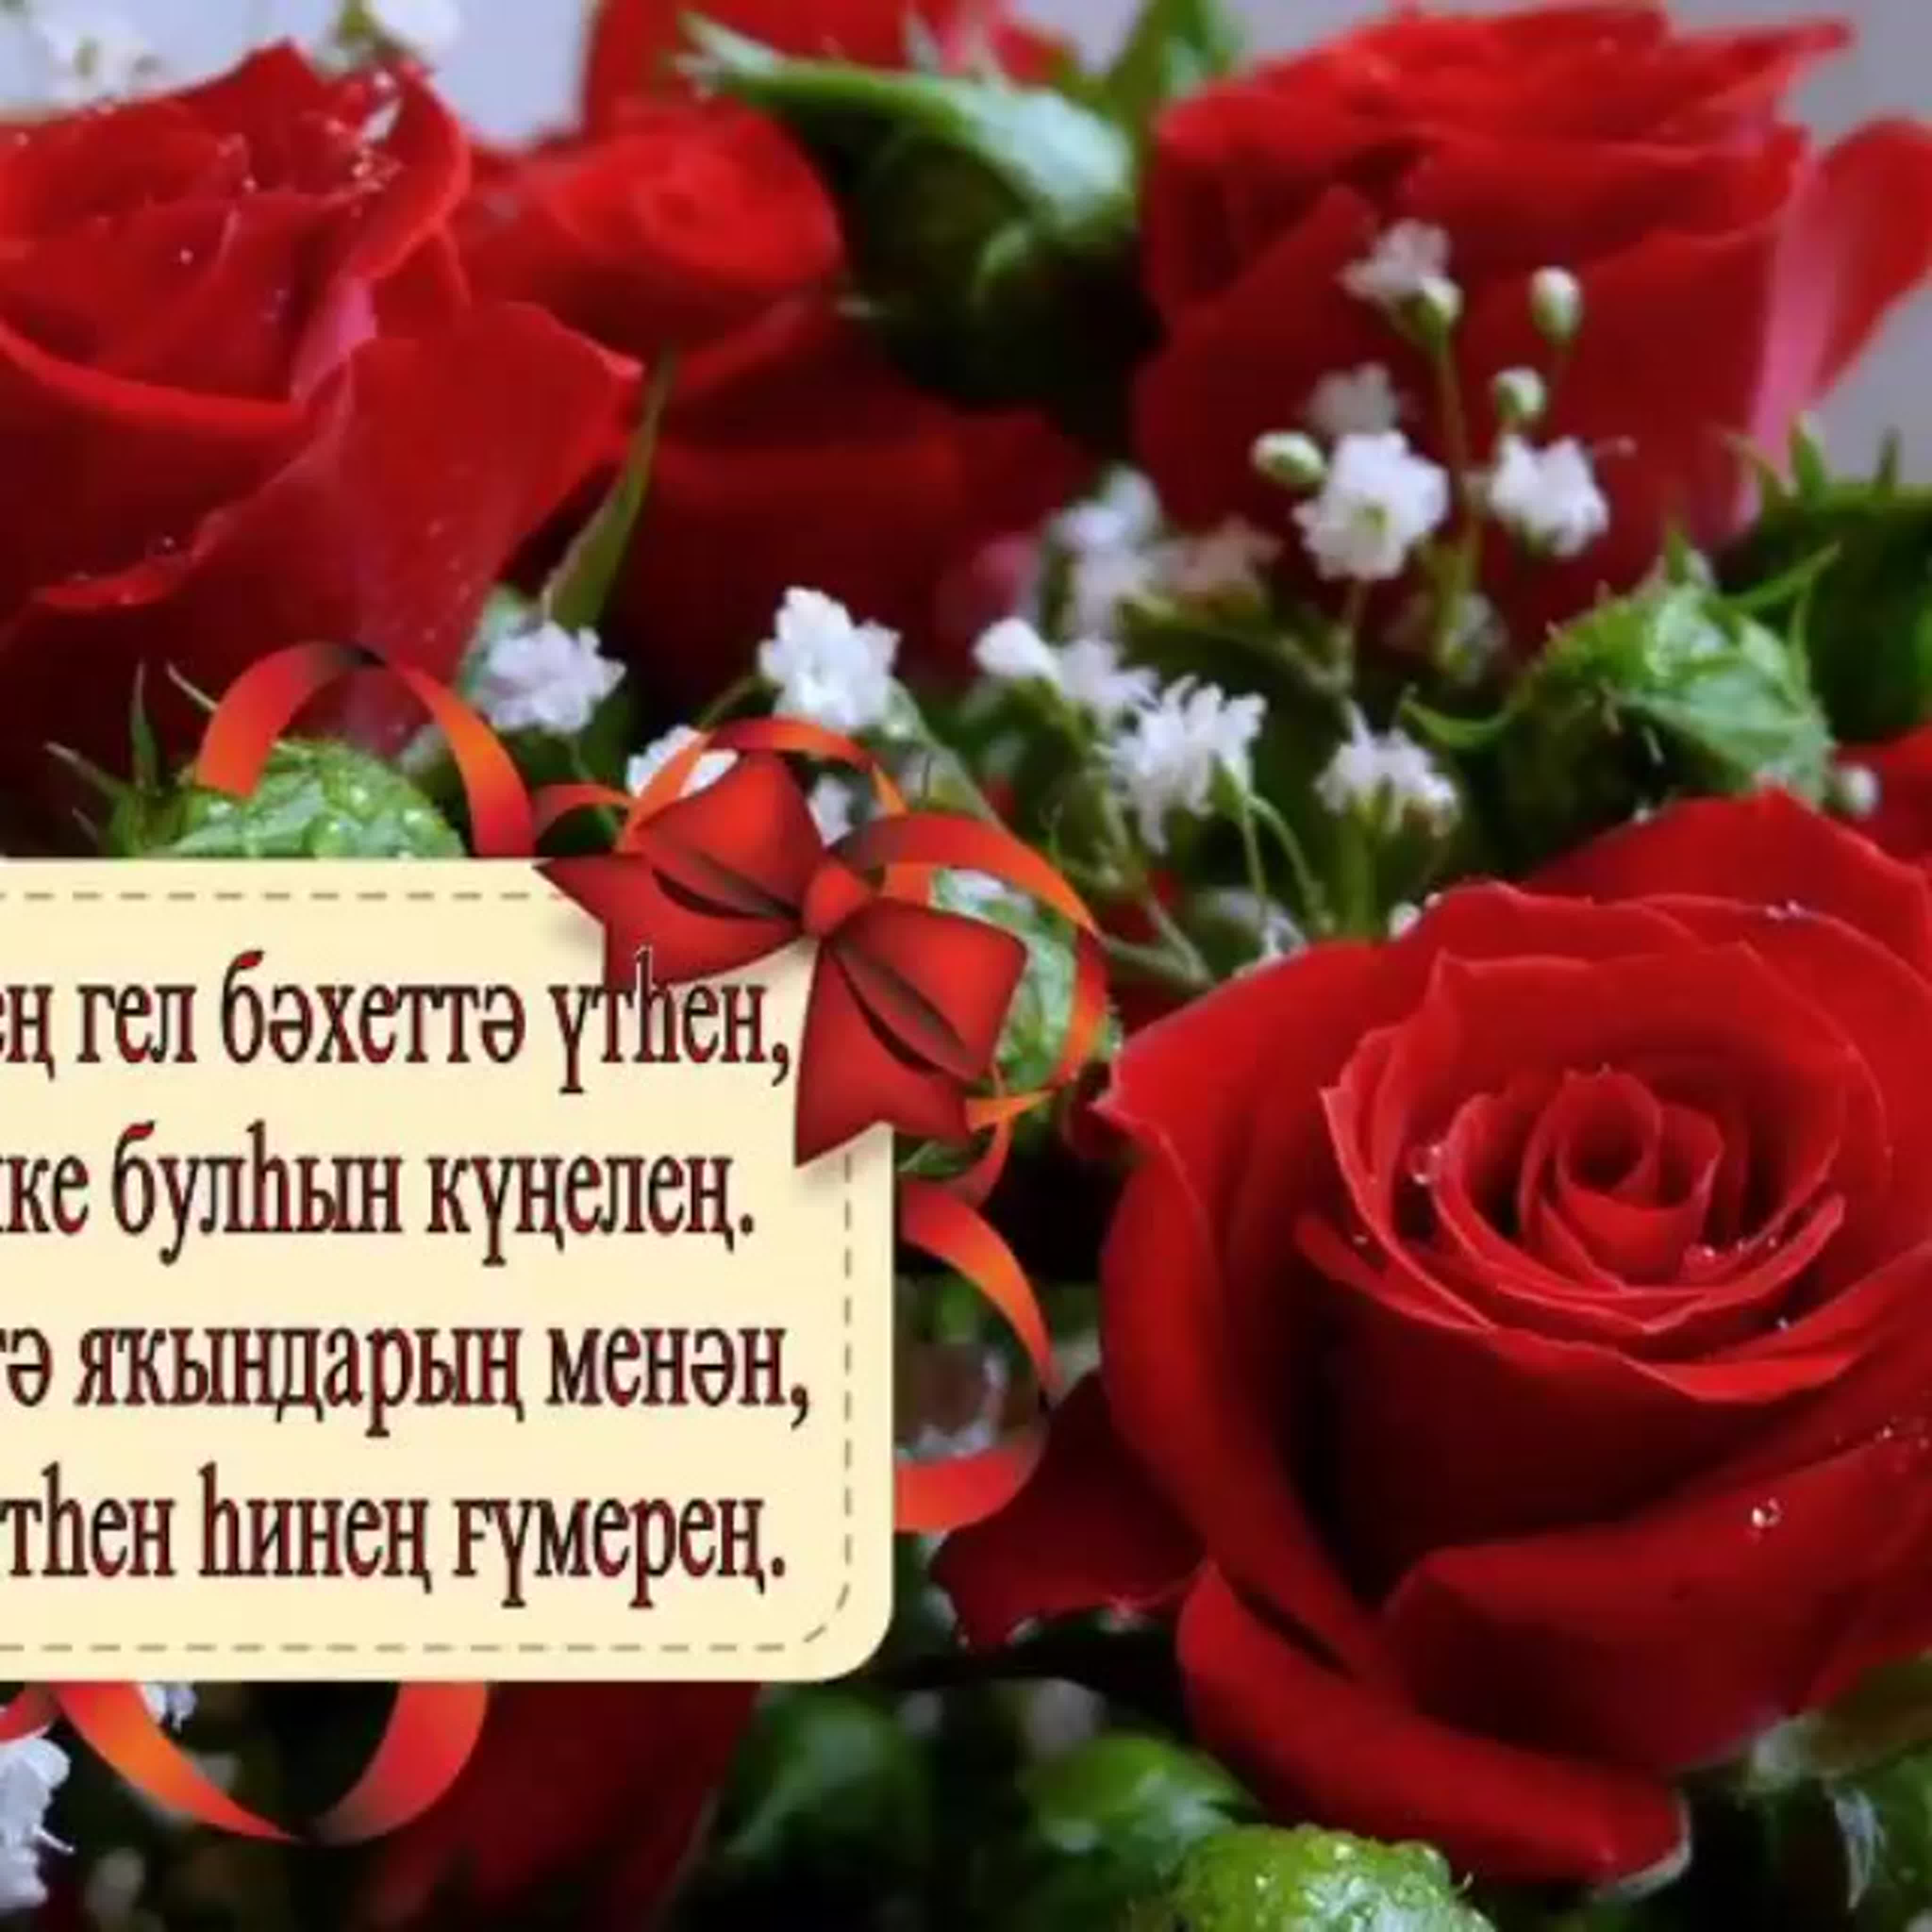 Башкирские пожелания на день рождения. Поздравления с днём рождения на башкирском языке. Поздравление с юбилеем на башкирском языке. Пожелания с днём рождения на башкирском языке. Открытки с днём рождения на башкирском языке.